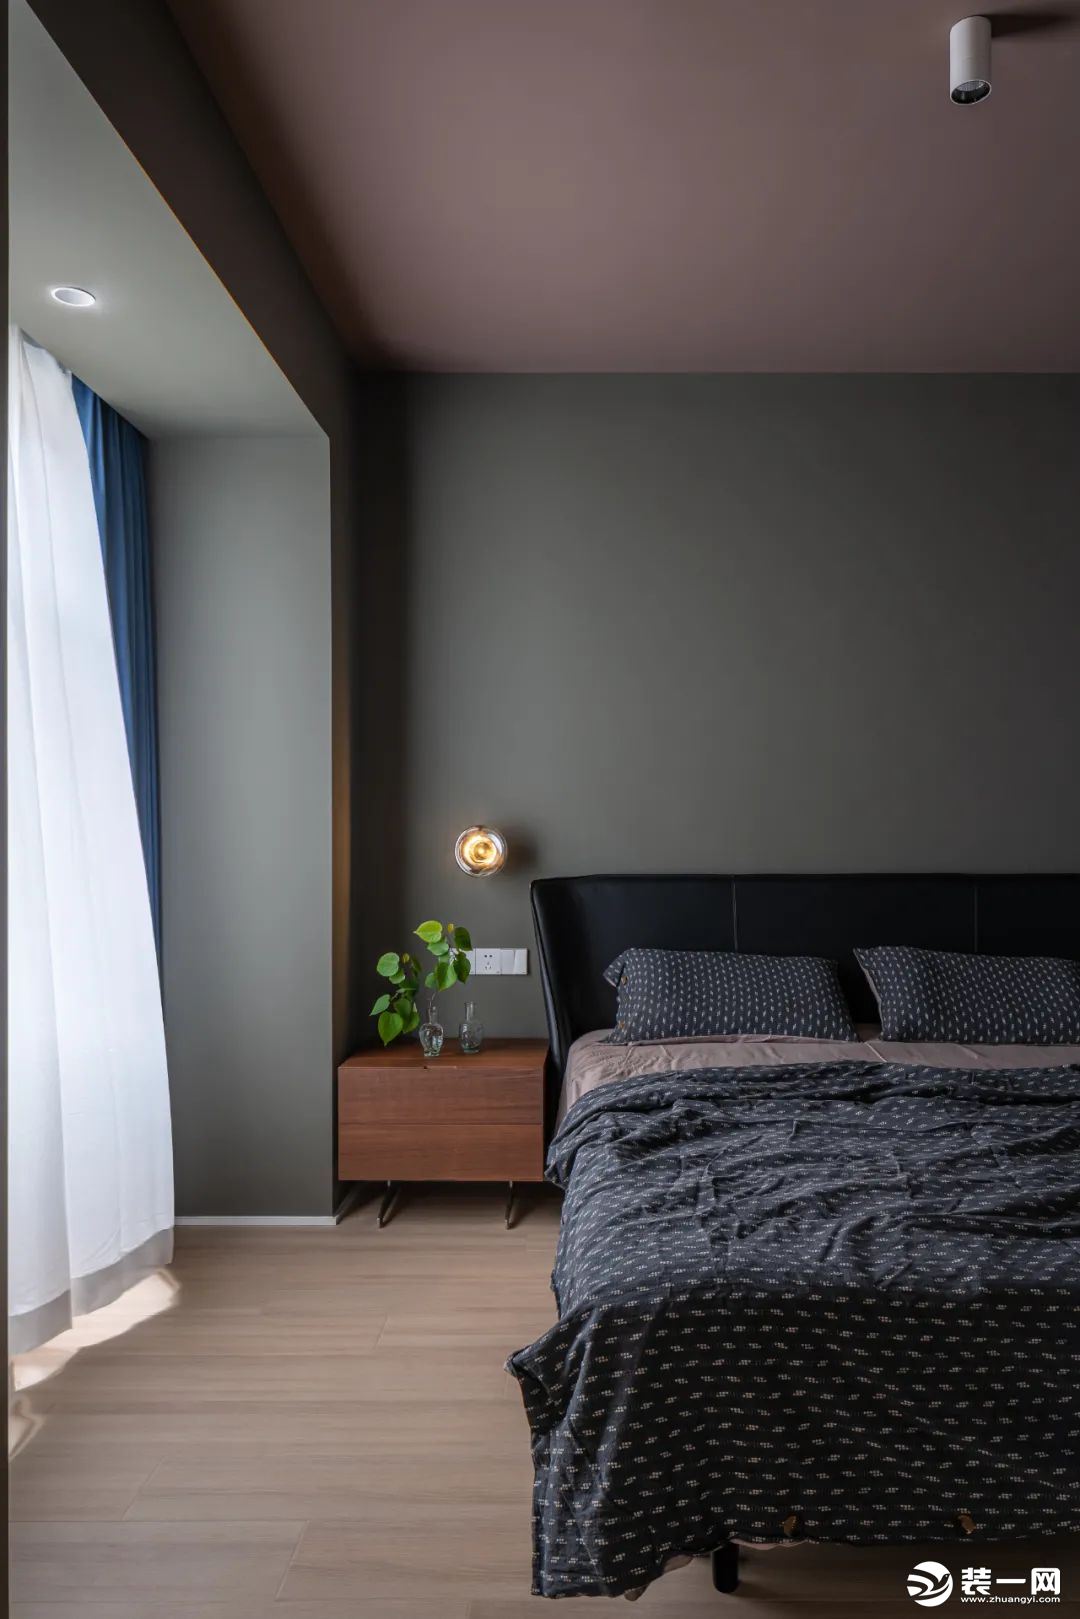 深色卧室内部和客厅白净形成鲜明对比，两种不同色系场域，表达着生活里两种截然不同需求。